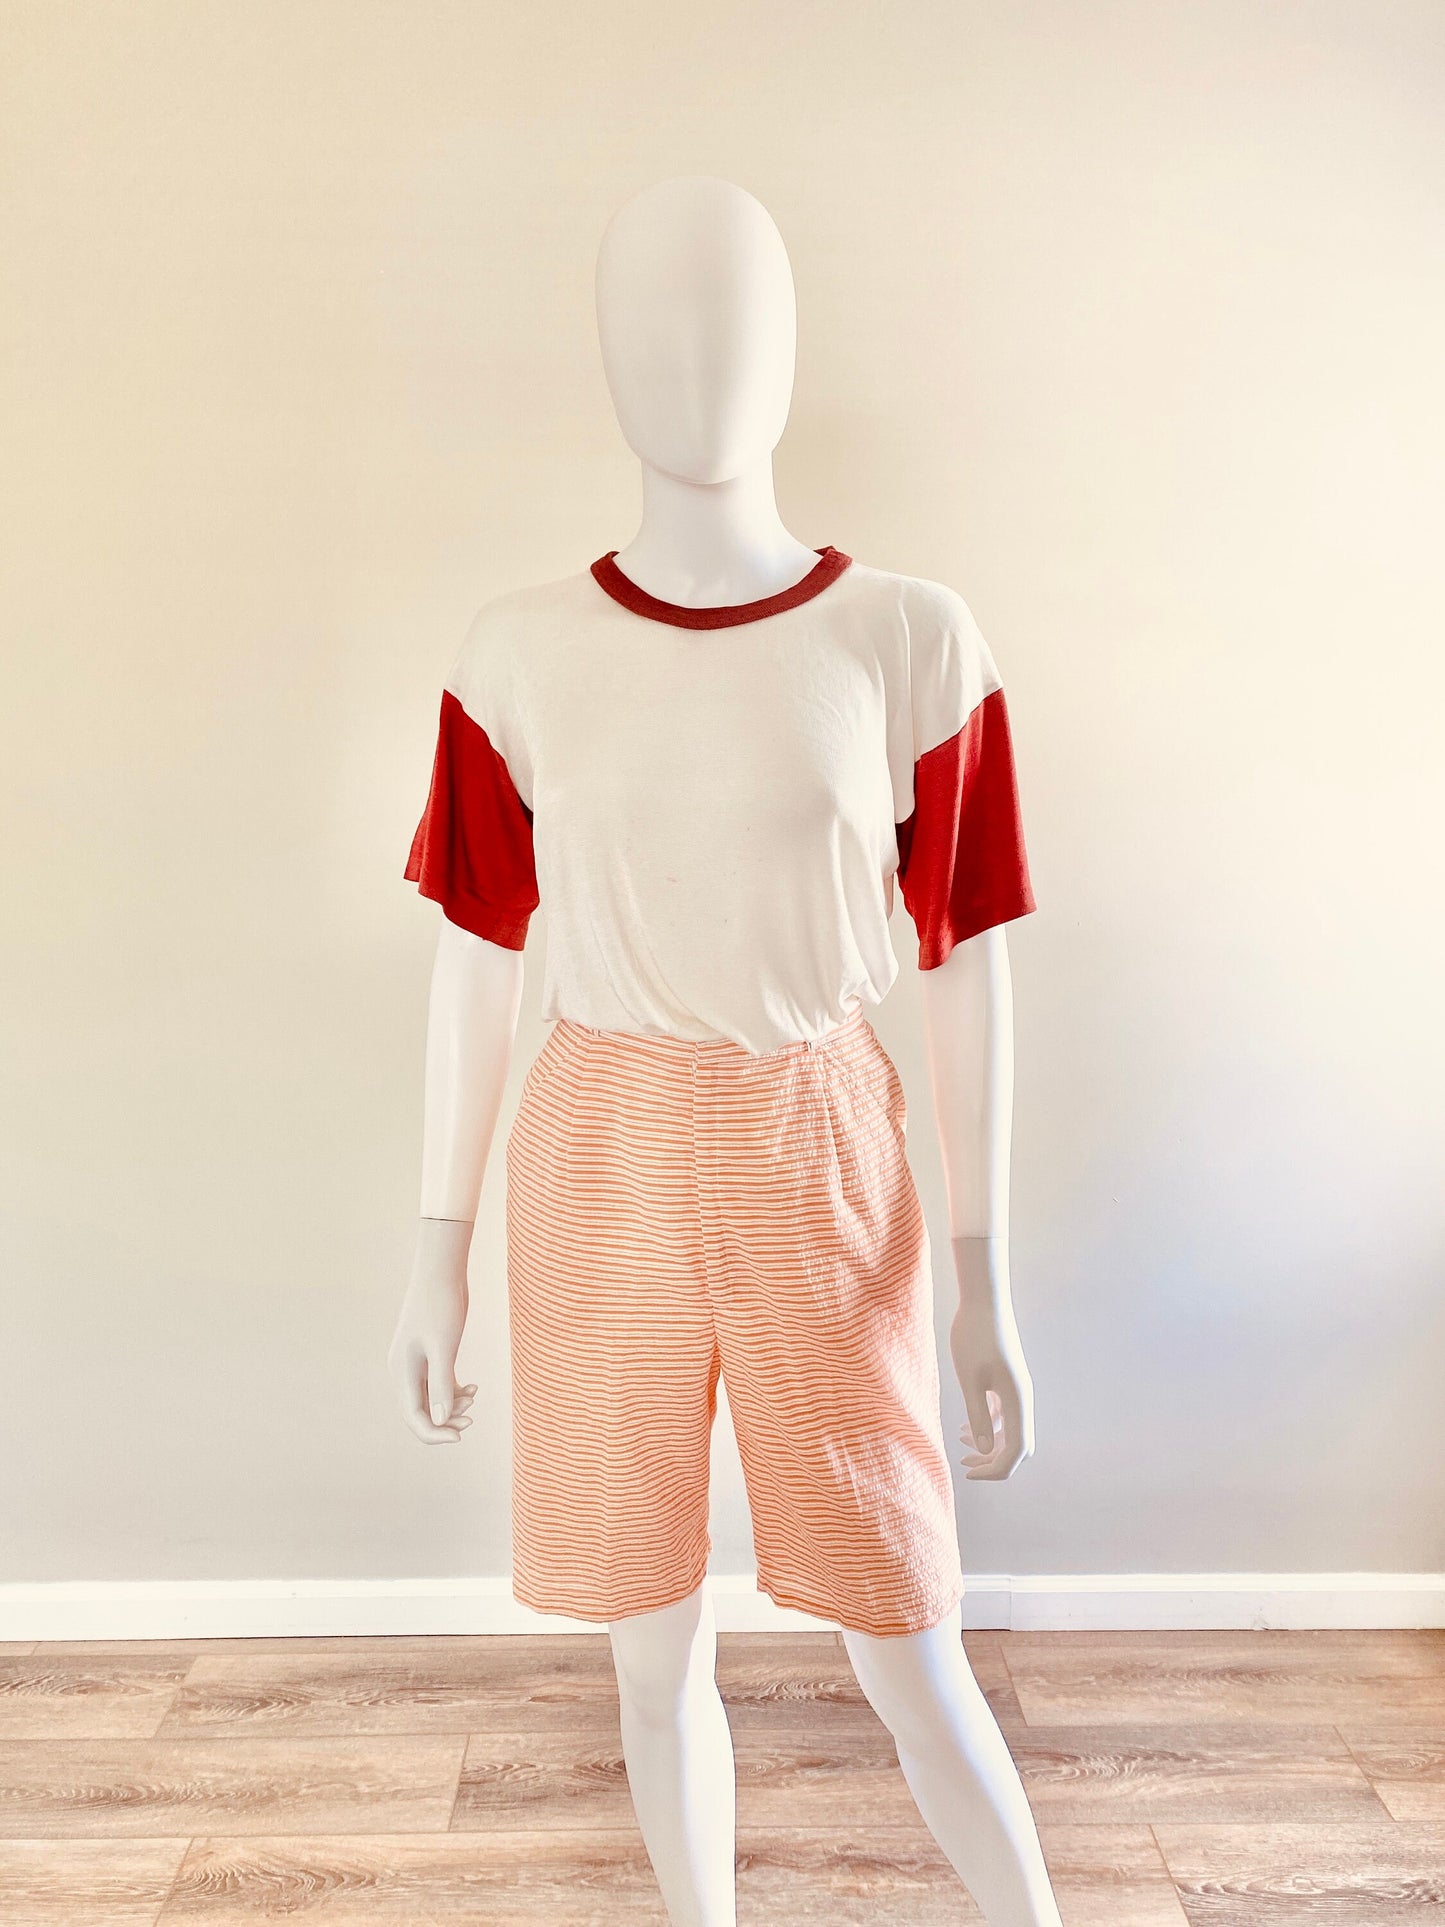 Vintage 1960s Seersucker Orange Striped Shorts / 60s retro Bermuda shorts / Size XS